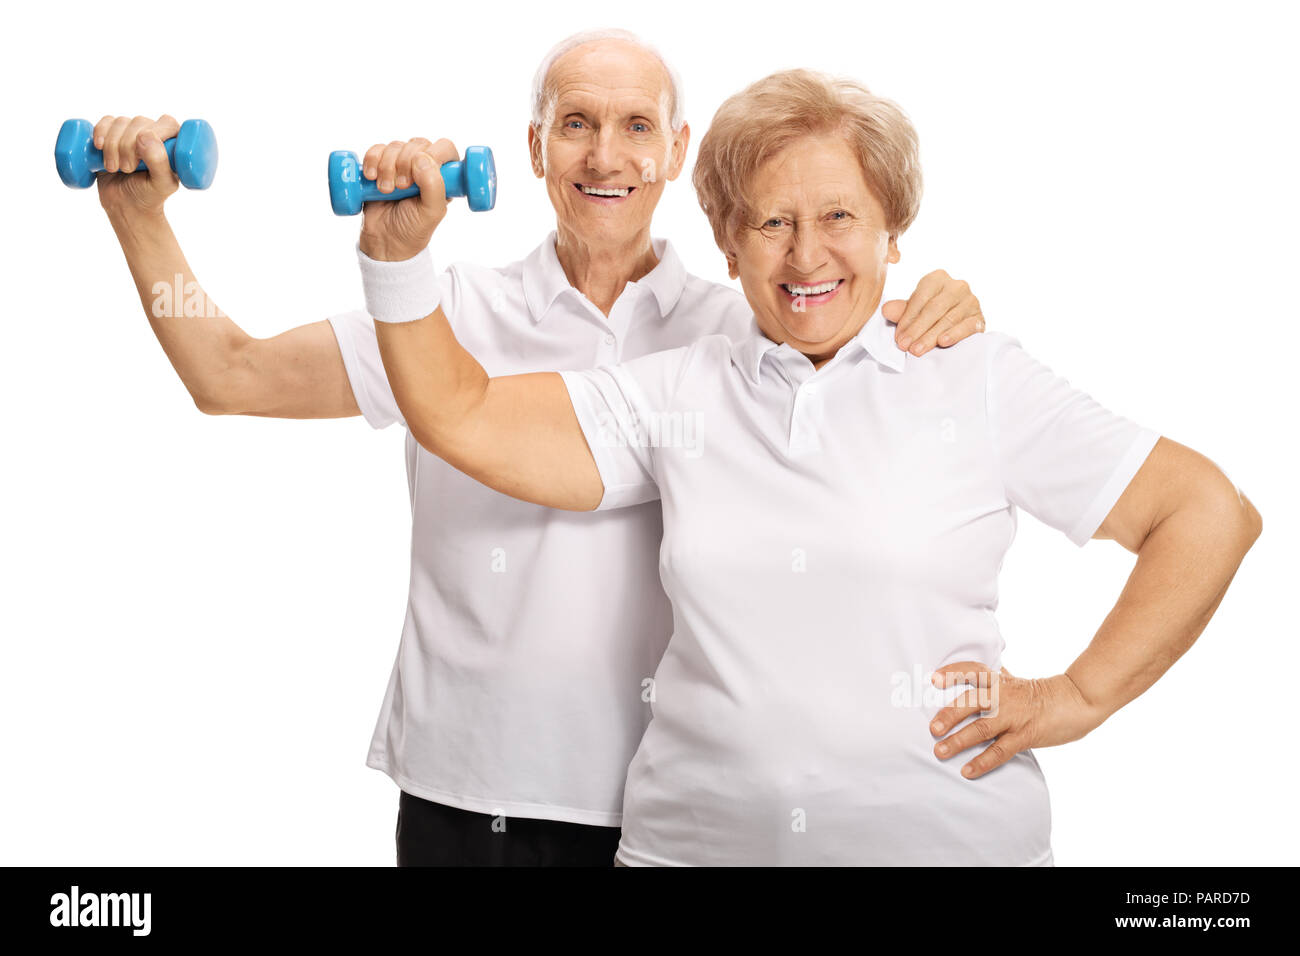 Elderly couple exercising with dumbbells isolated on white background Stock Photo